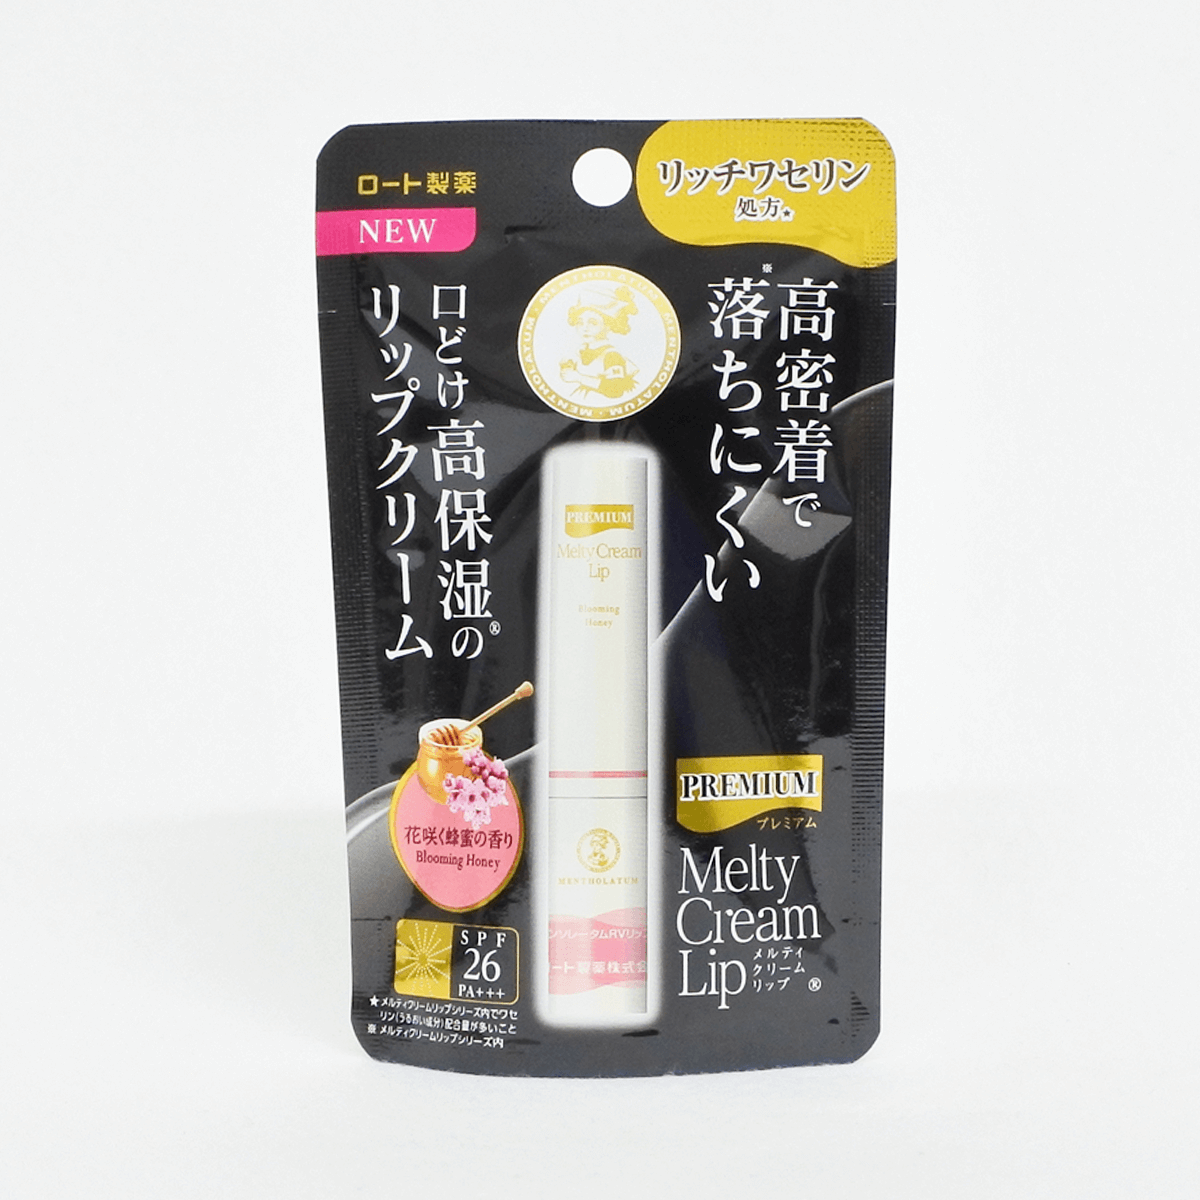 乐敦制药 曼秀雷敦 Premium高保湿护唇膏(蜂蜜香) 2.4g